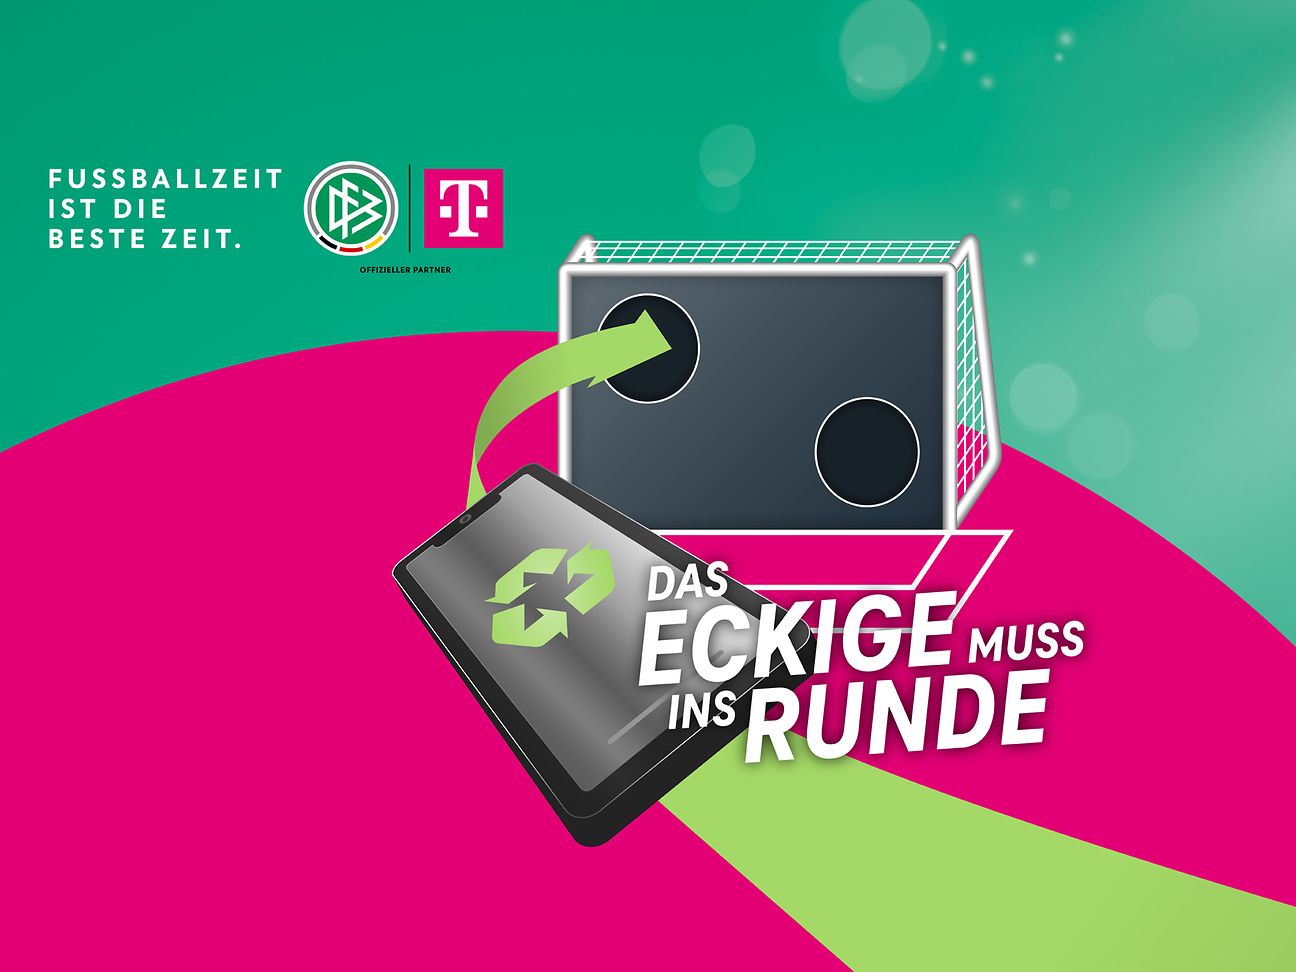 Recycling-Symbol auf Smartphone mit Fußball und Fußballtor, DFB und Telekom Logos, 'Das Eckige muss ins Runde'-Slogan.